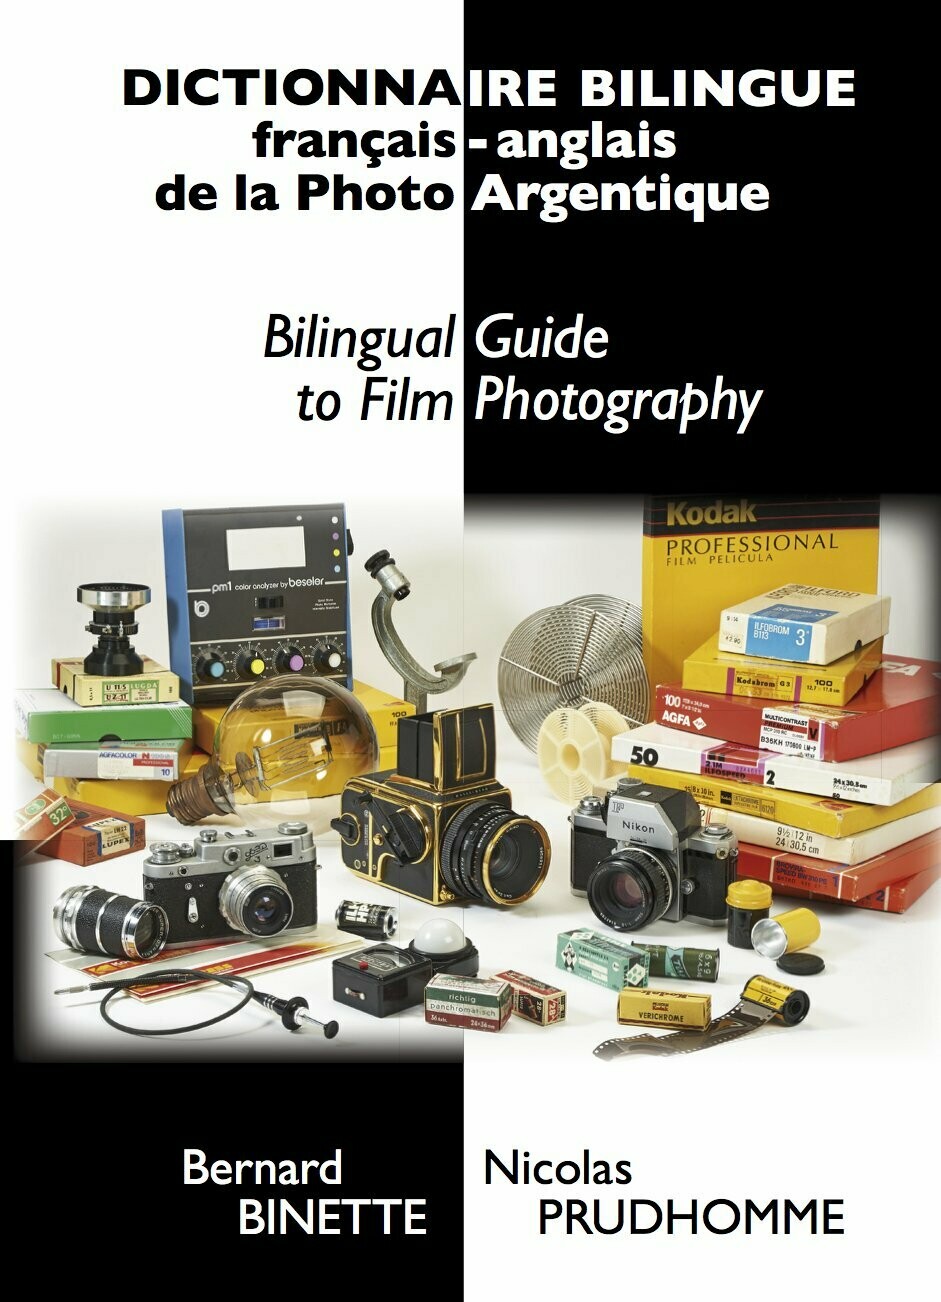 Dictionnaire bilingue français-anglais de la Photo Argentique (version papier) en PROMO